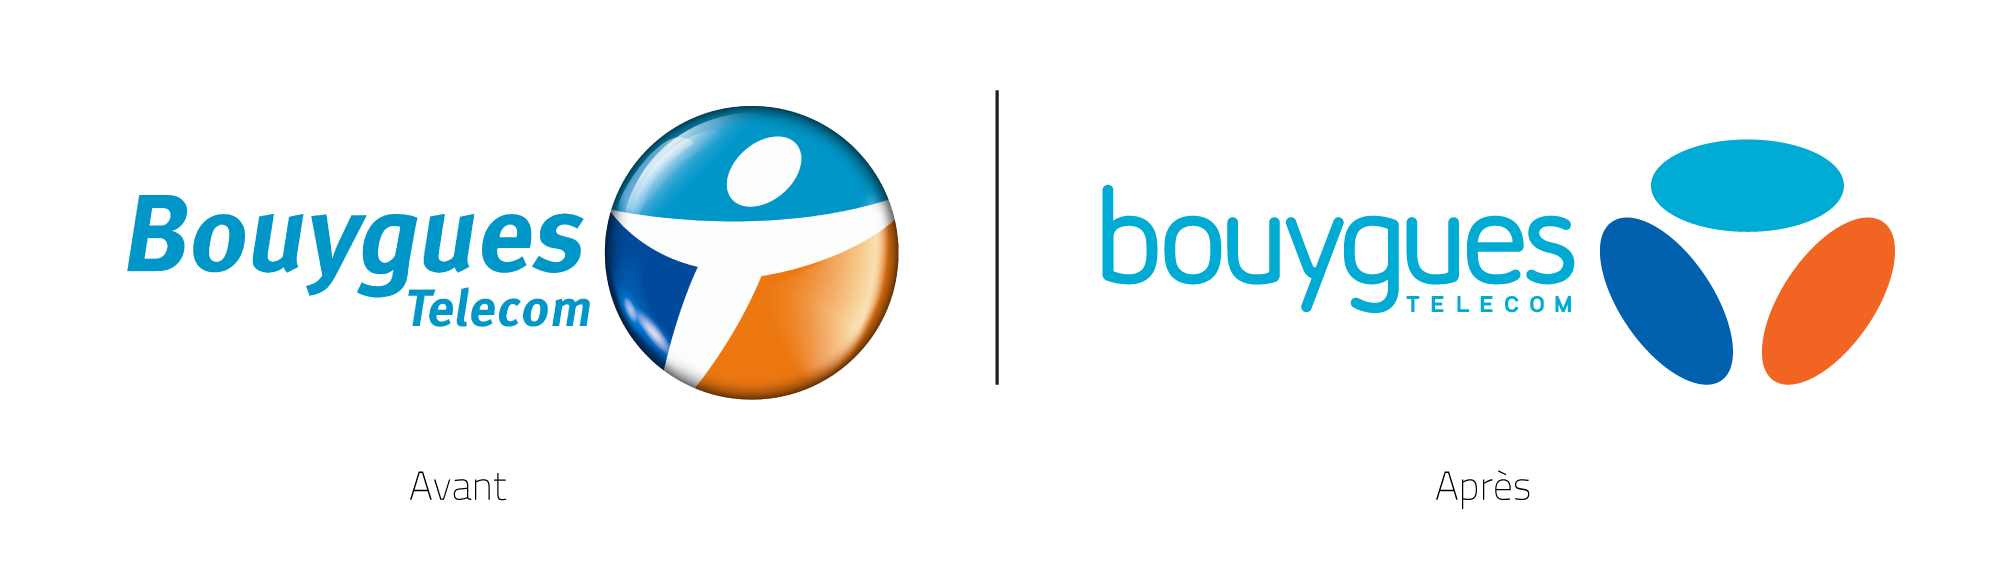 Nouveau Logo Bouygues Telecom - Bouygues Telecom, Transparent background PNG HD thumbnail